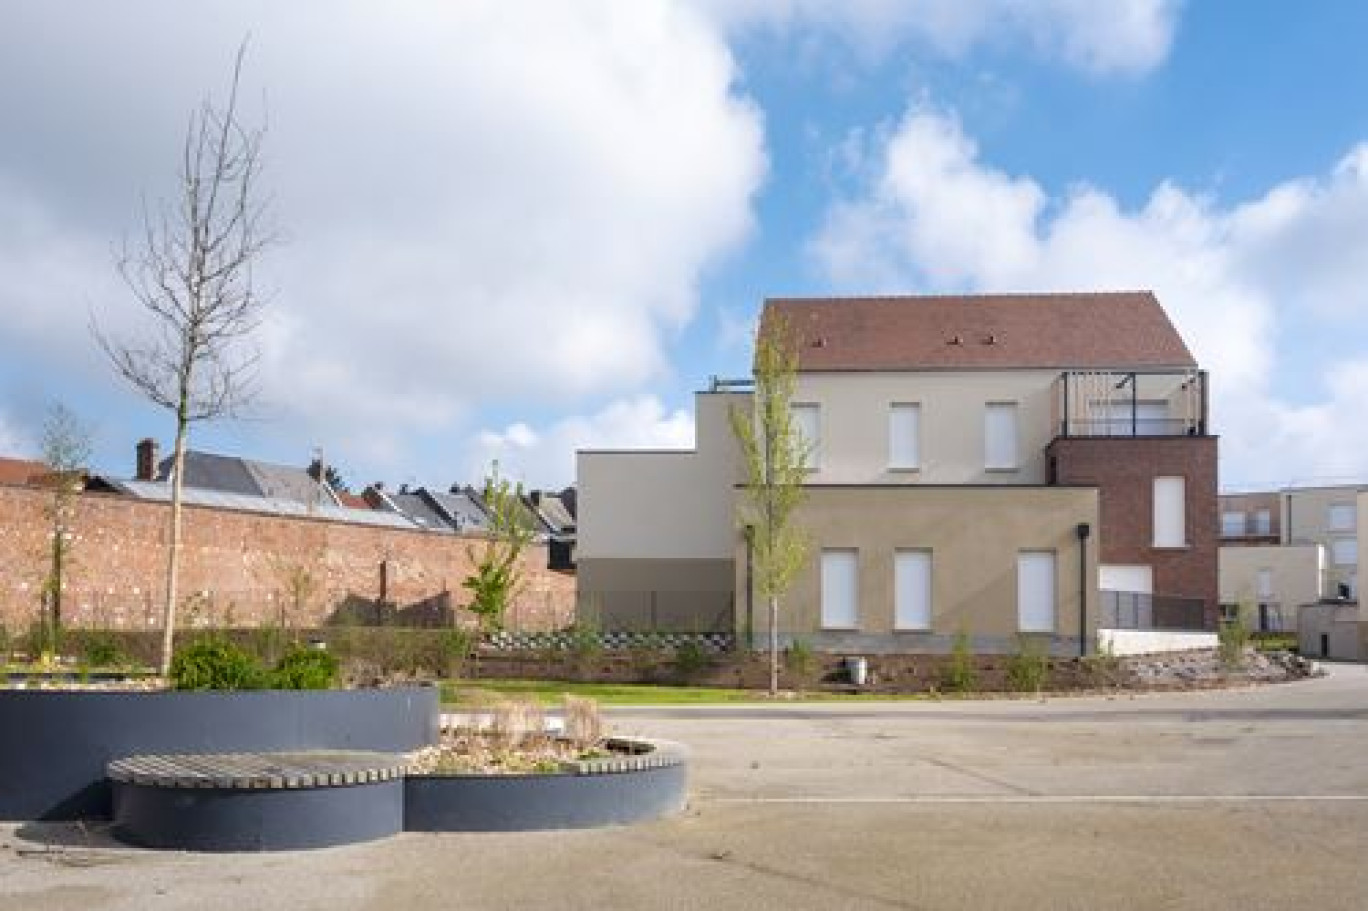 L'écoquartier du Maréchal Juin à Saint-Quentin, une initiative d'aménagement qui intègre les principes et les défis du développement durable à l'échelle d'un quartier.(c)Yann Anteale